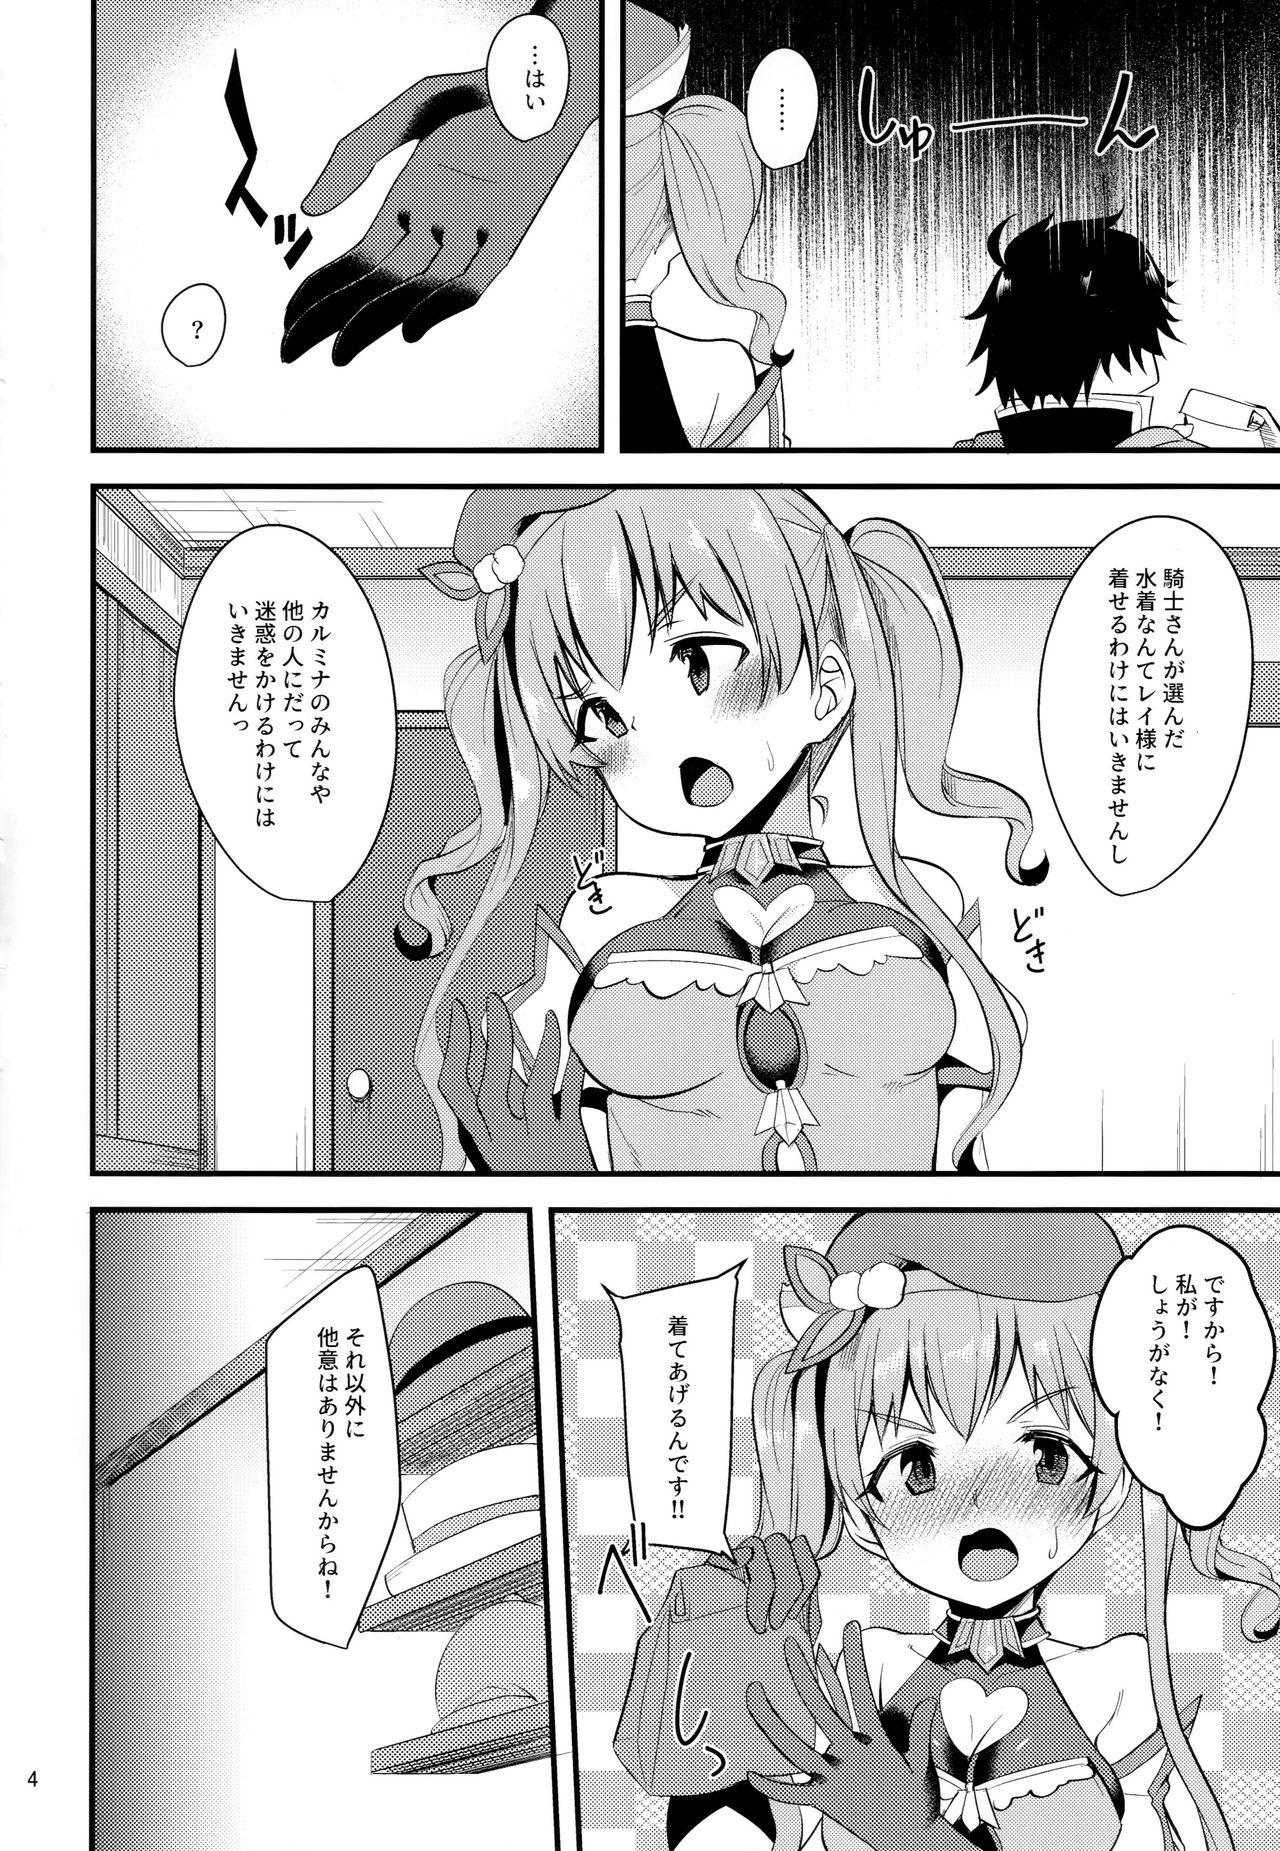 Dominant Tsumugi Make Heroine Move!! 02 - Princess connect Chaturbate - Page 3